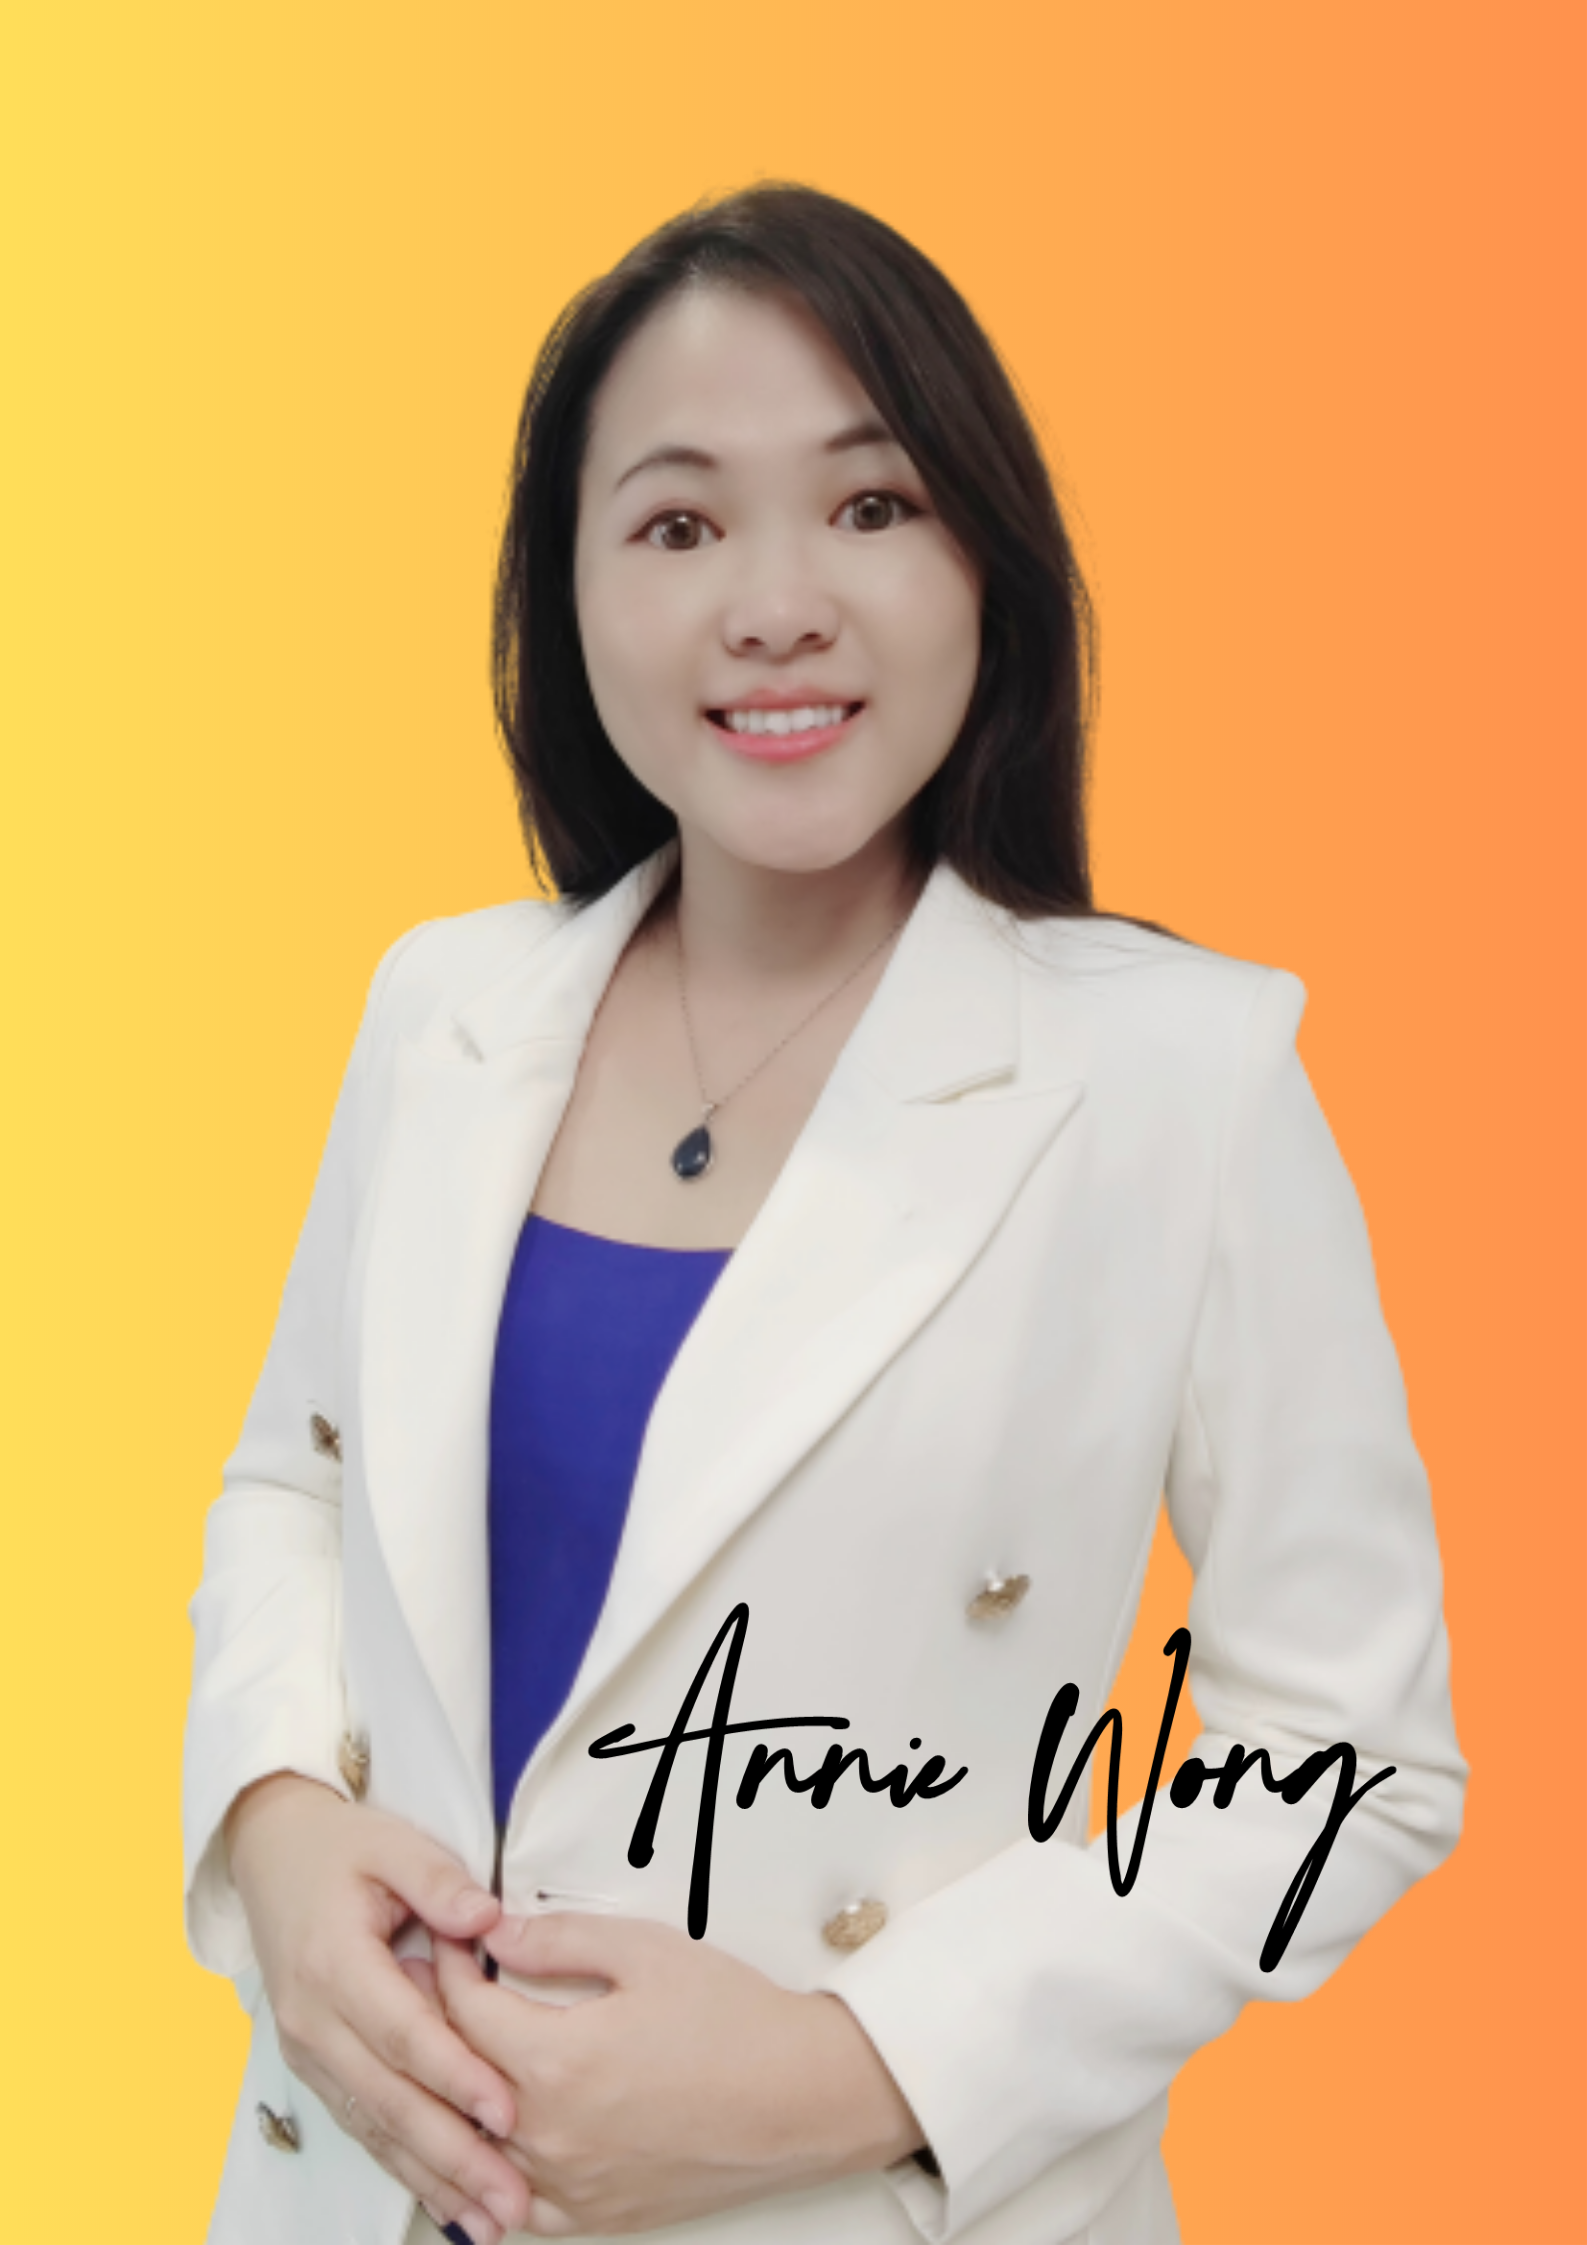 Annie Wong